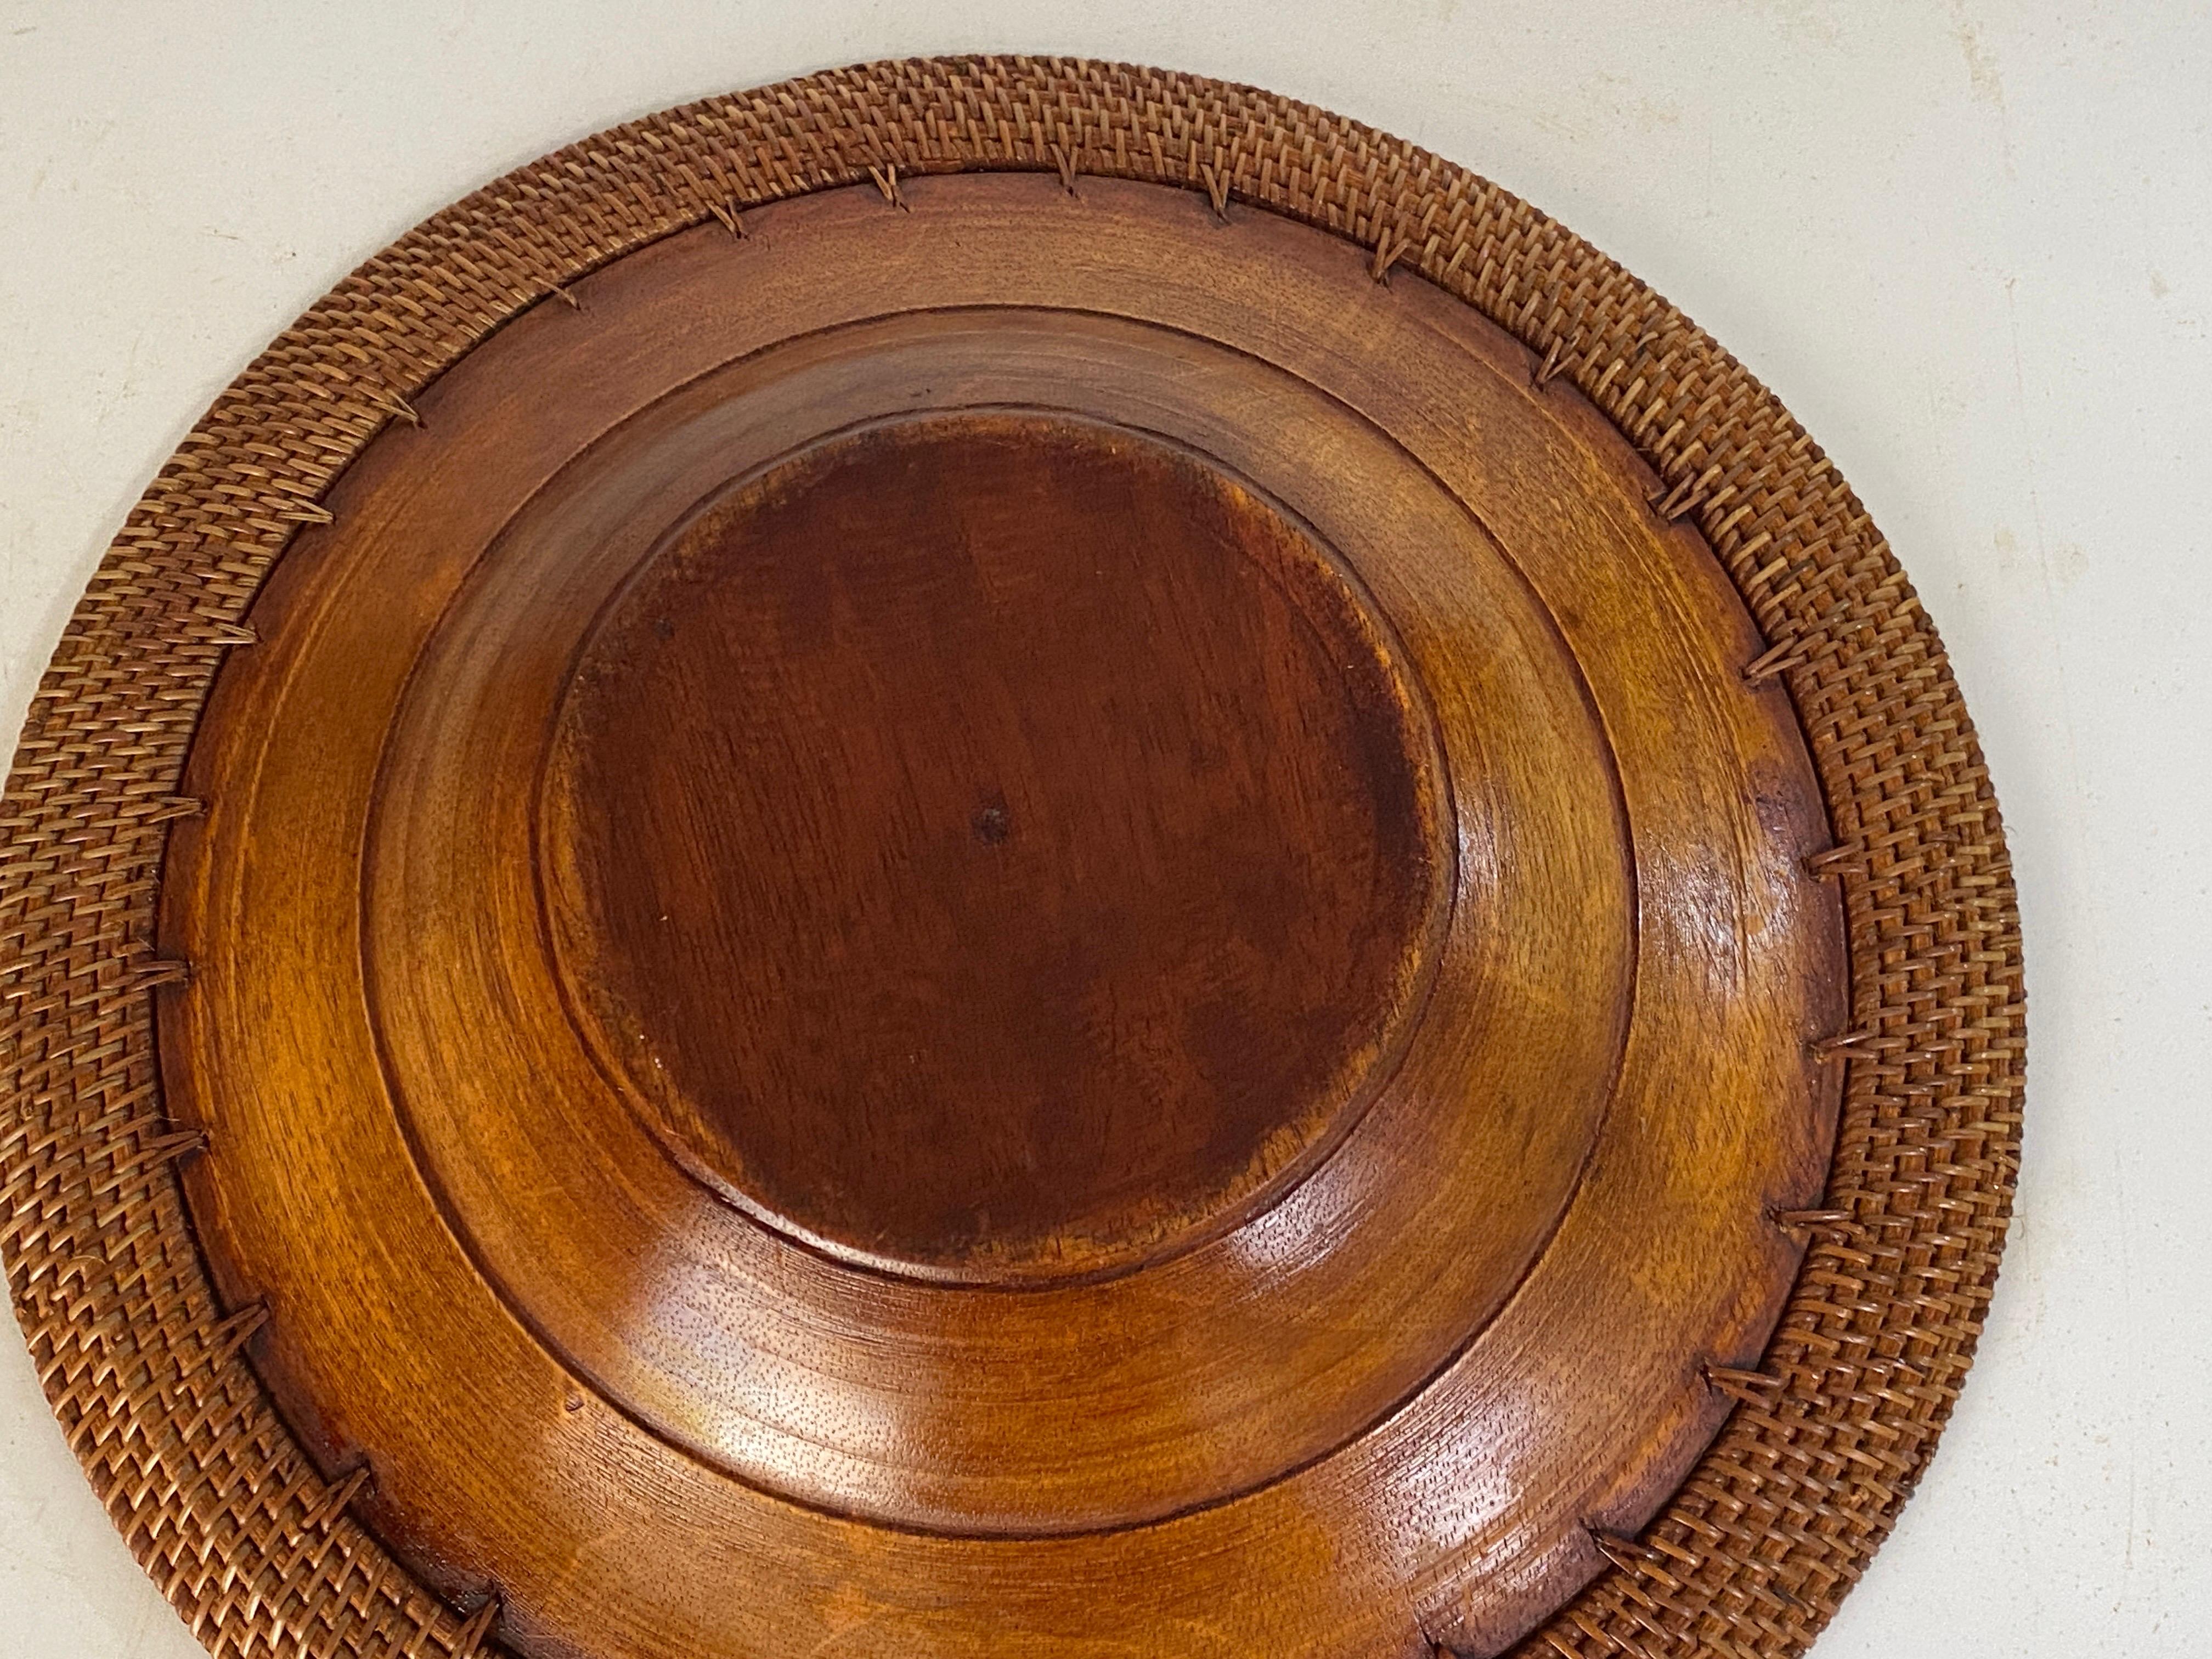 Grande assiette décorative en bois de couleur brune. Ancienne et belle patine.
Circa 1960